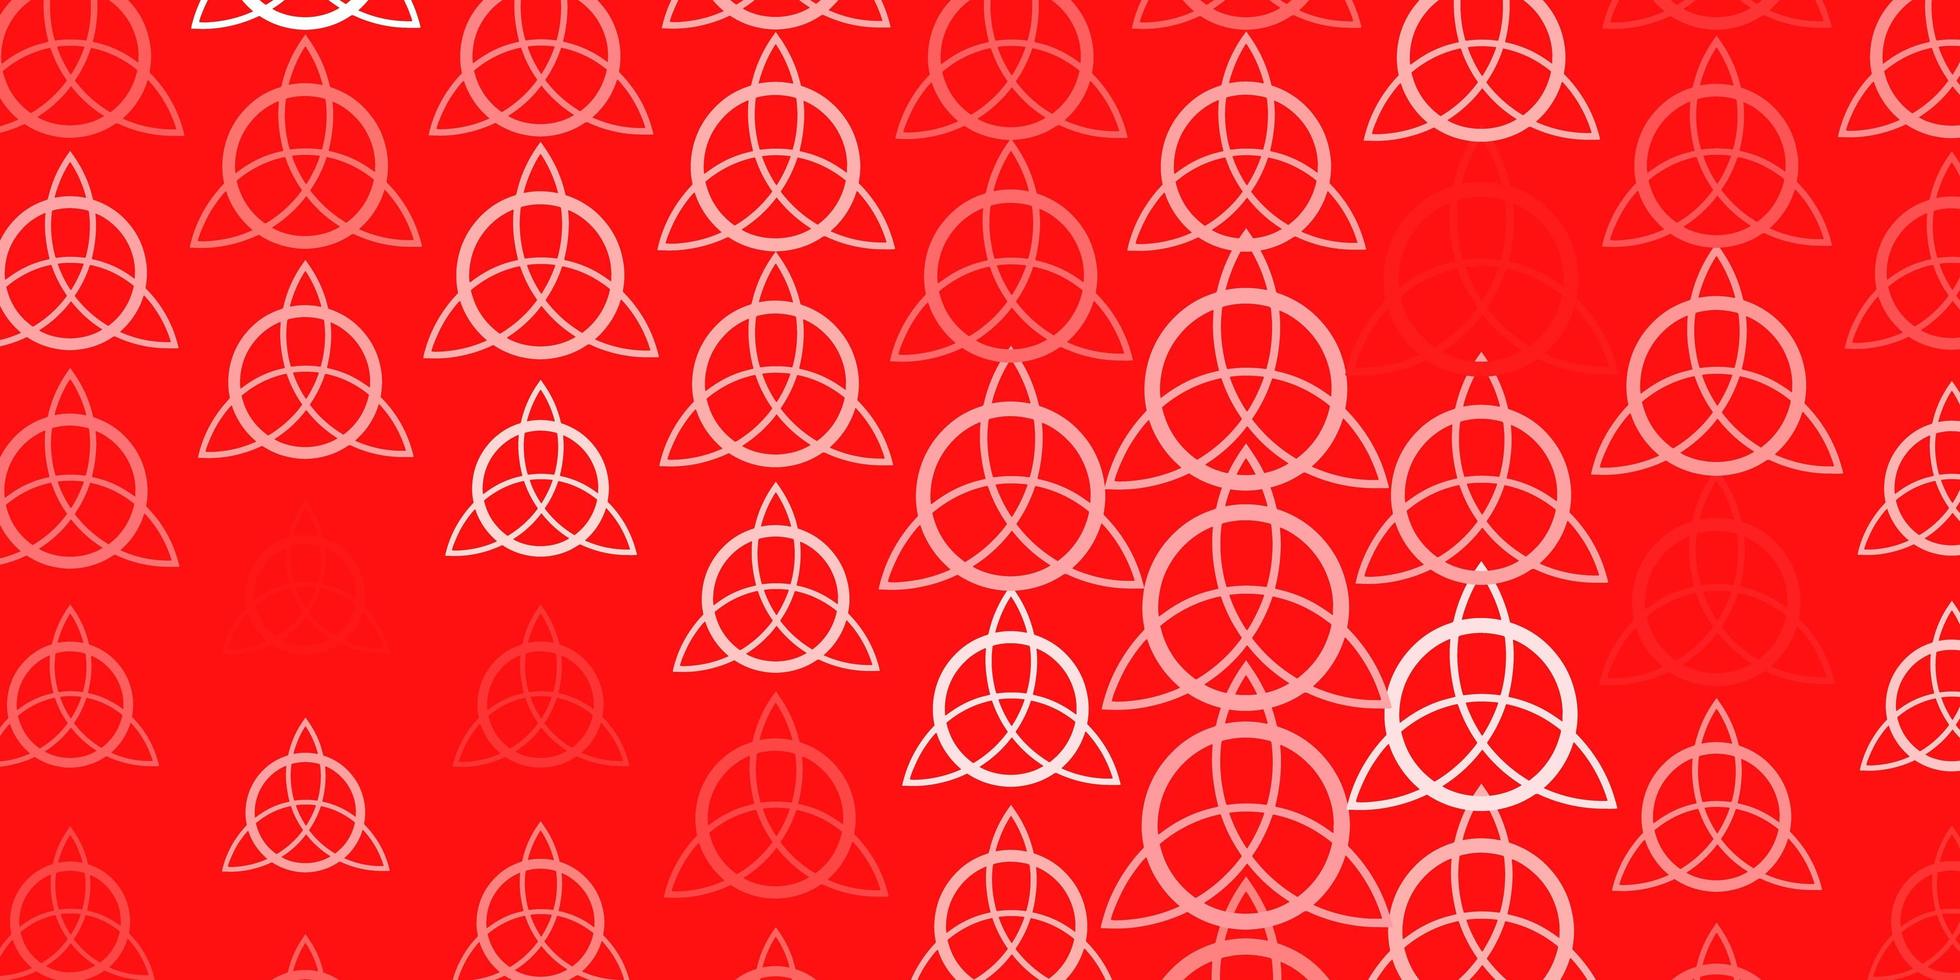 sfondo vettoriale rosso chiaro con simboli occulti.